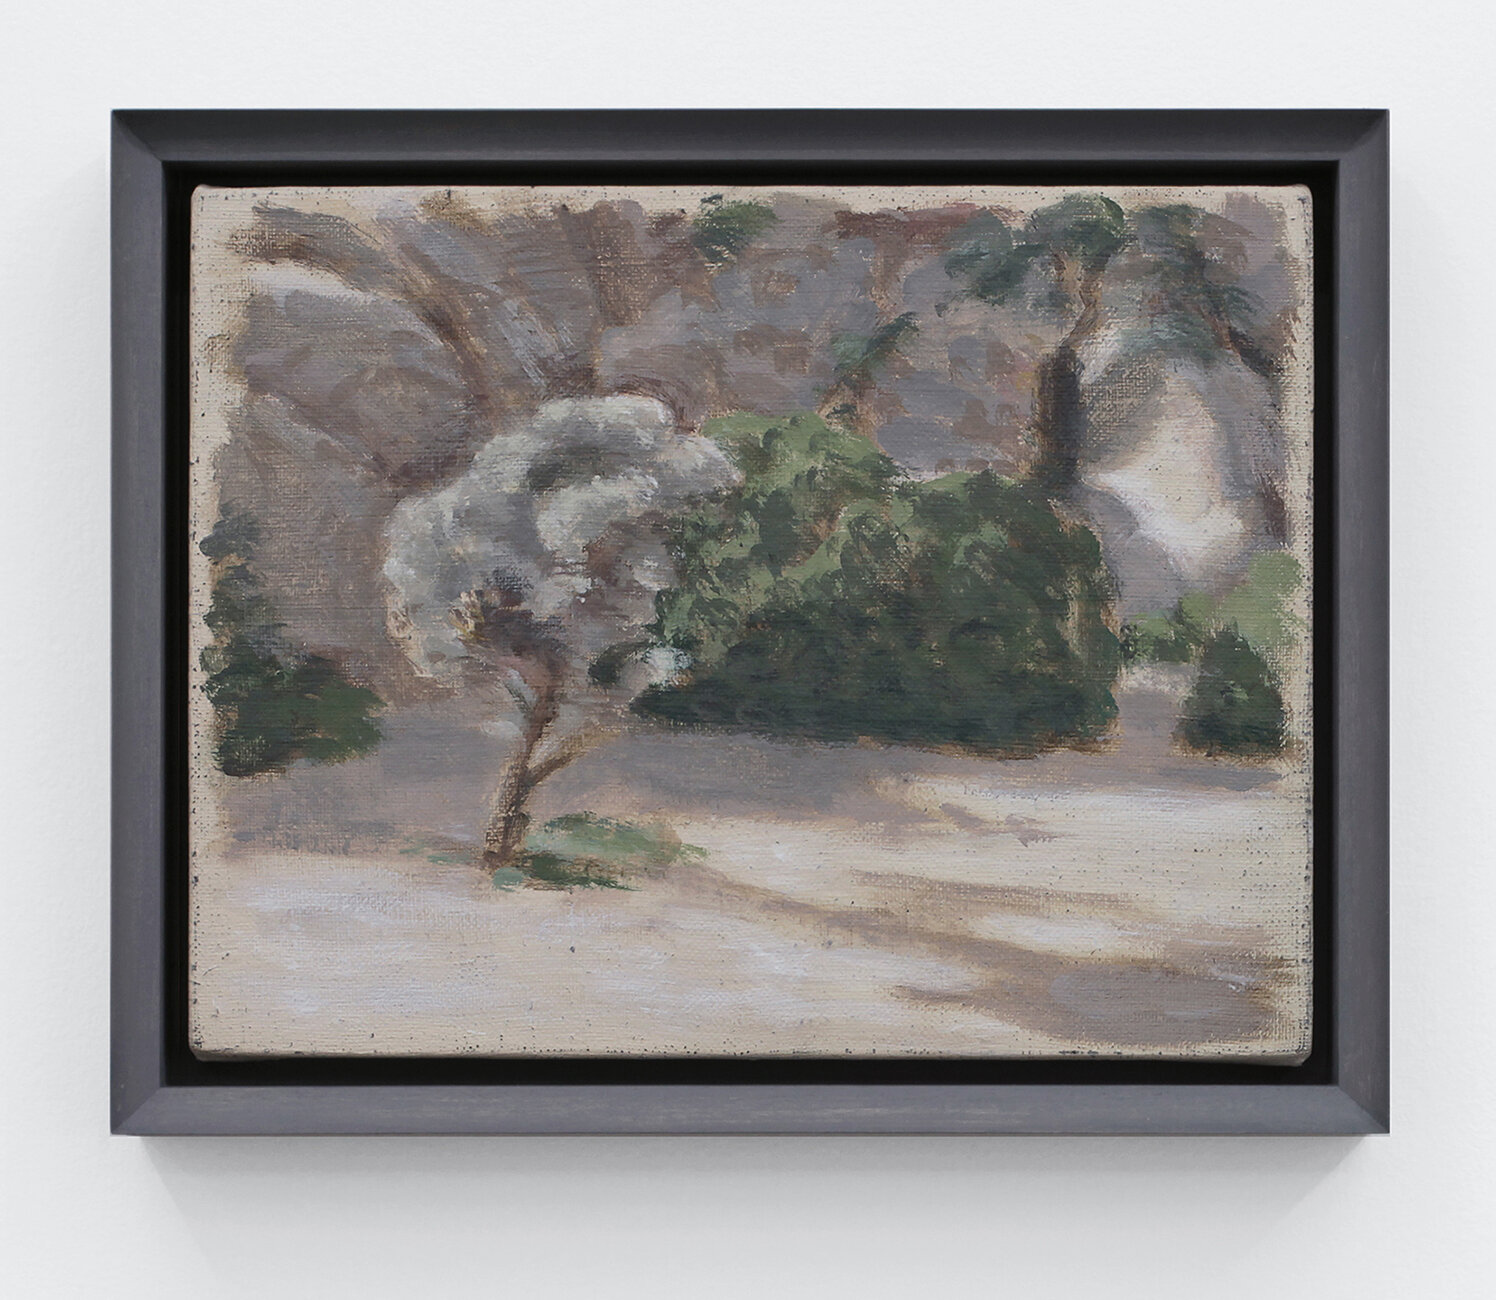  Sermon Notes - Landscape II  2018  Distemper on canvas  7 x 9 inches  (17.78 x 22.86 cm)     